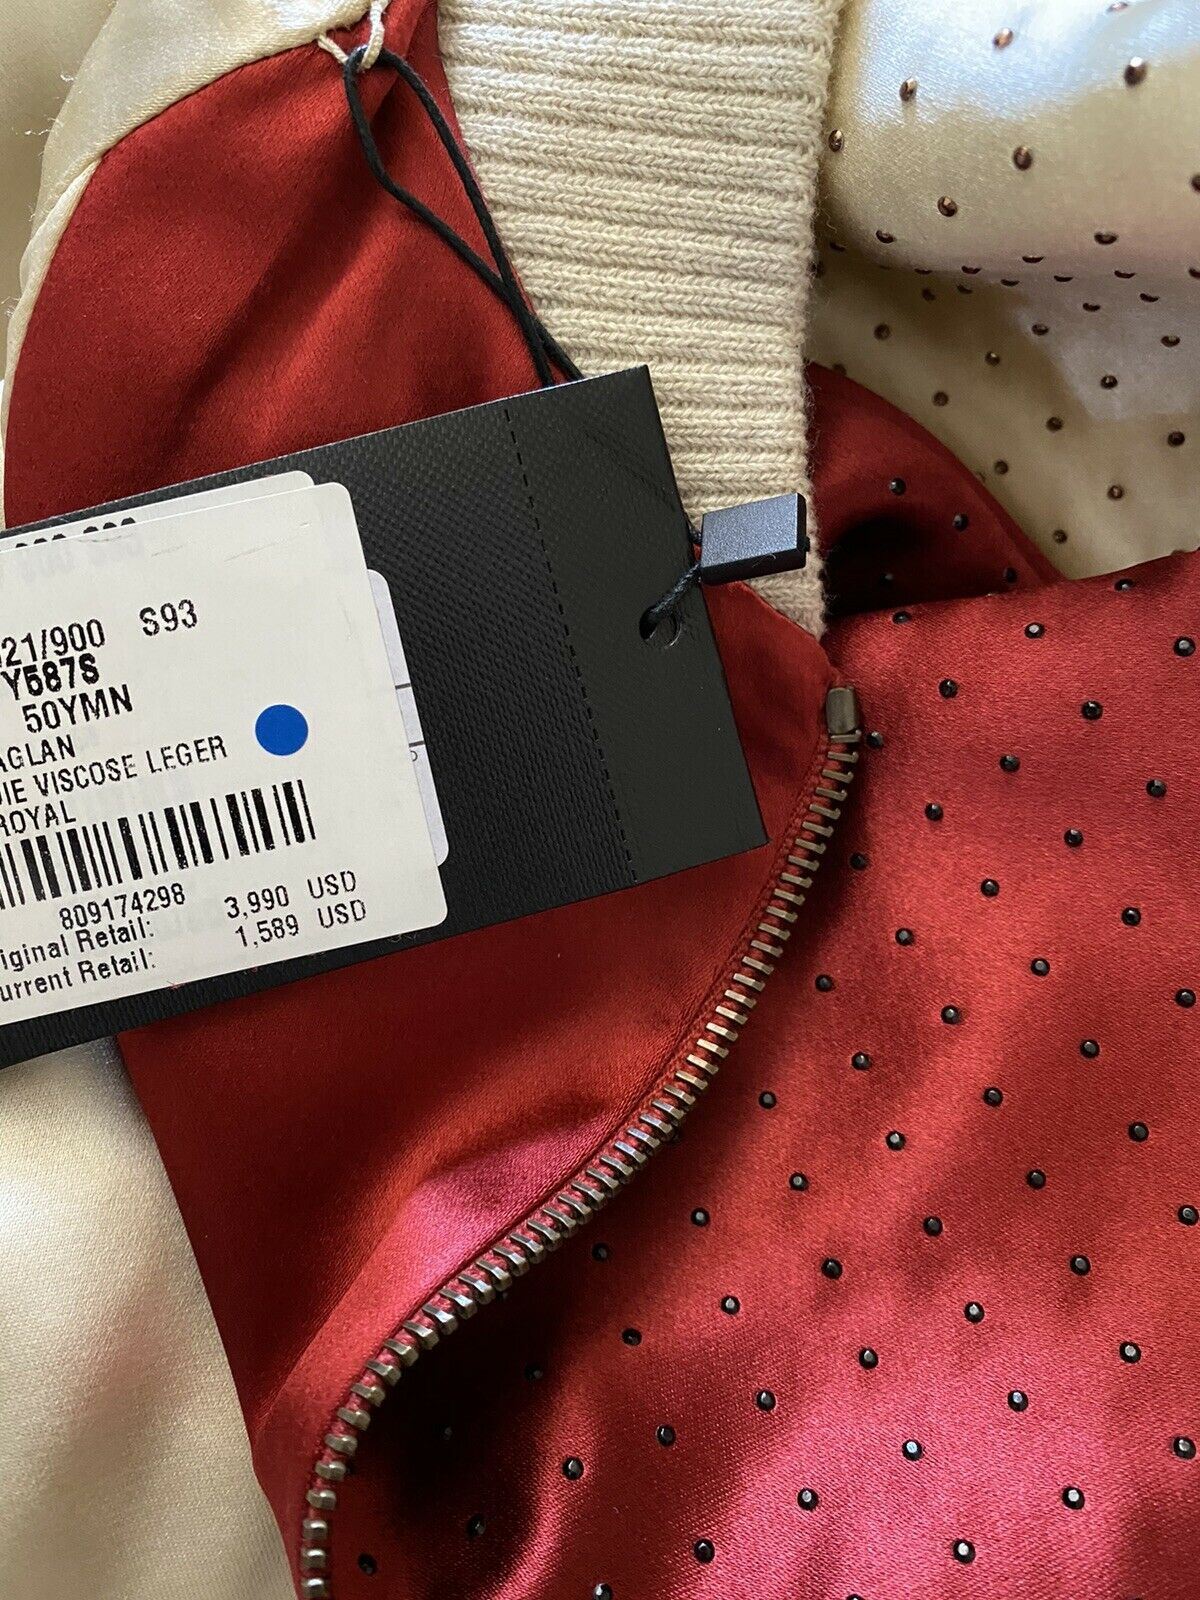 Новая куртка Saint Laurent Versity за 3990 долларов, красное/кремовое 40 США/50 ЕС Италия